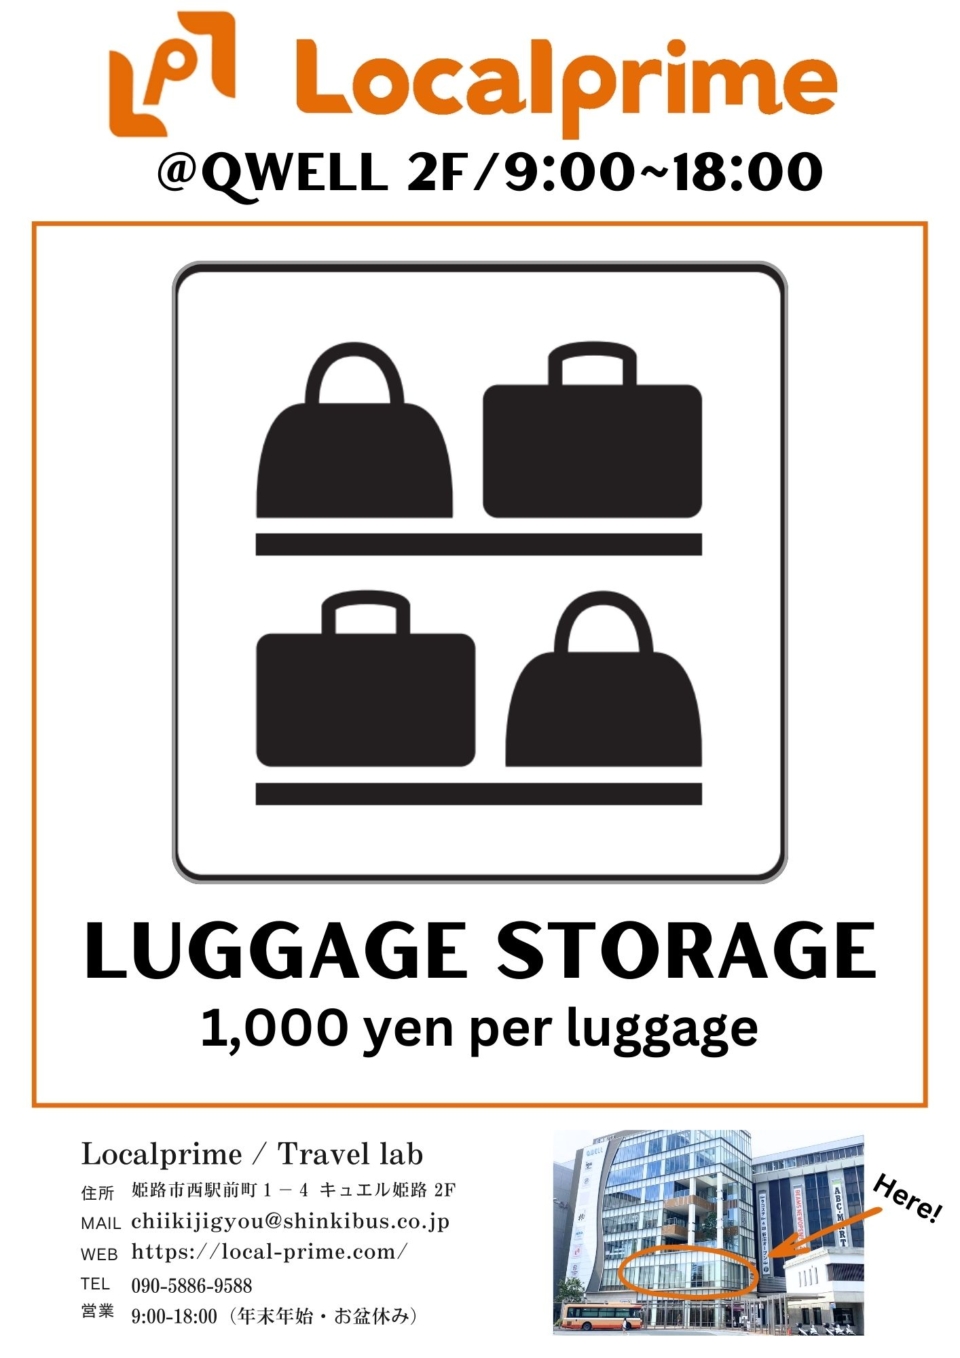 Temporary luggage storage